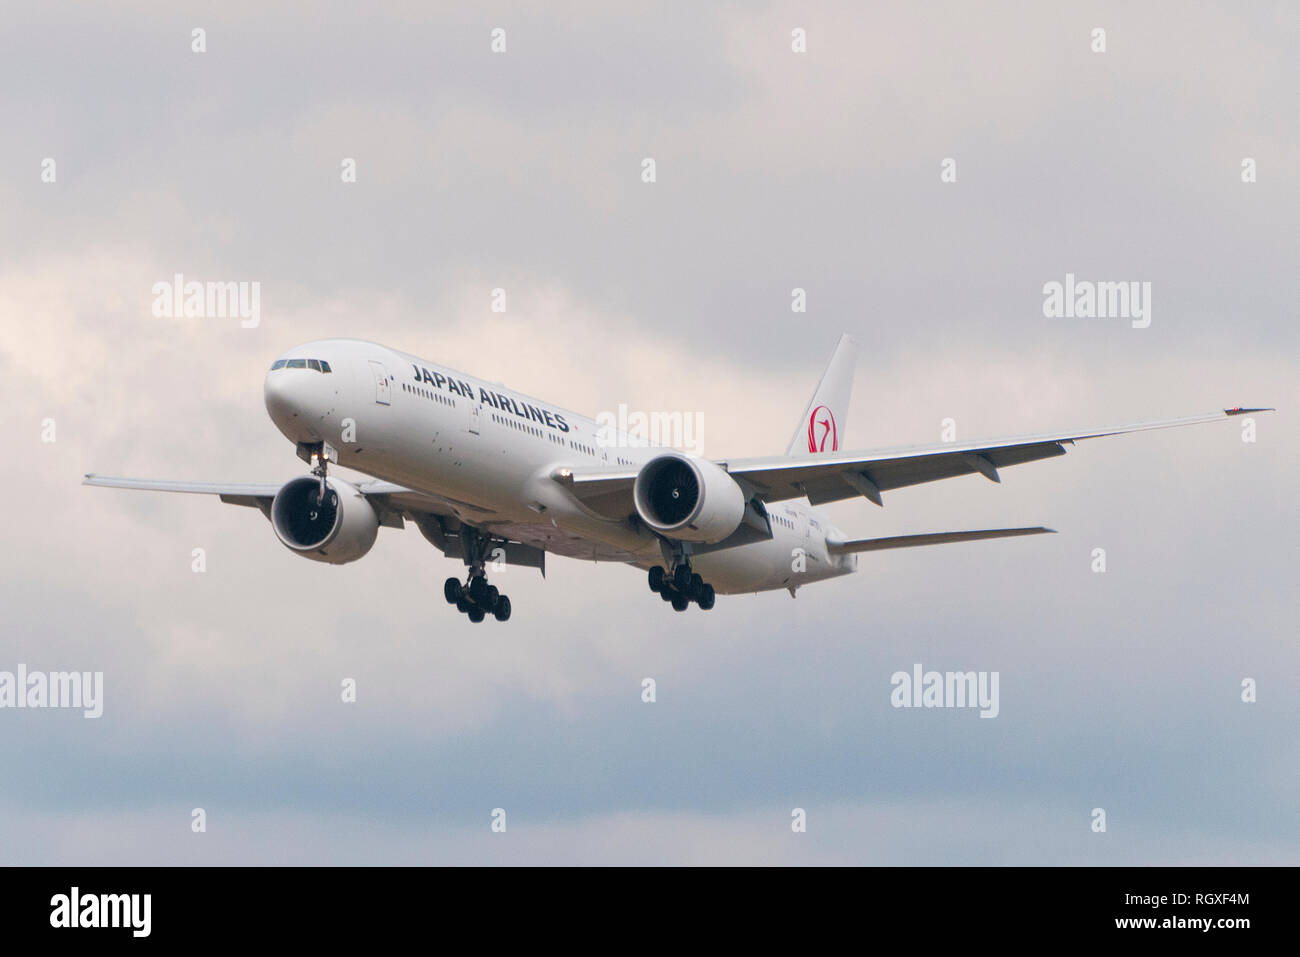 Londres, UK - 6 août 2013 - Un avion de la compagnie aérienne japonaise atterrit à l'aéroport d'Heathrow à Londres Banque D'Images